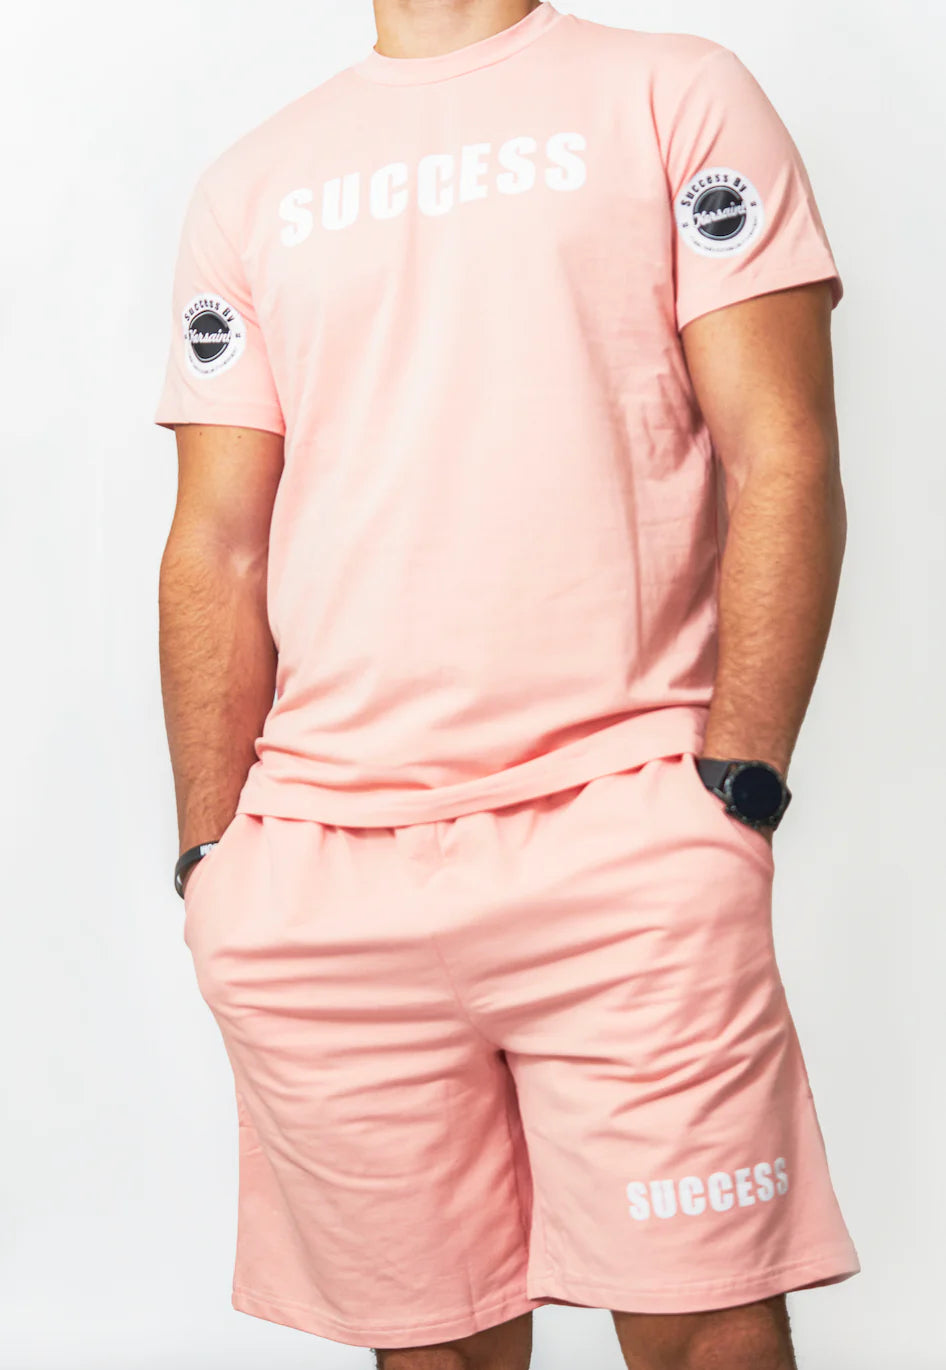 Pink Success Shorts Set TShirt